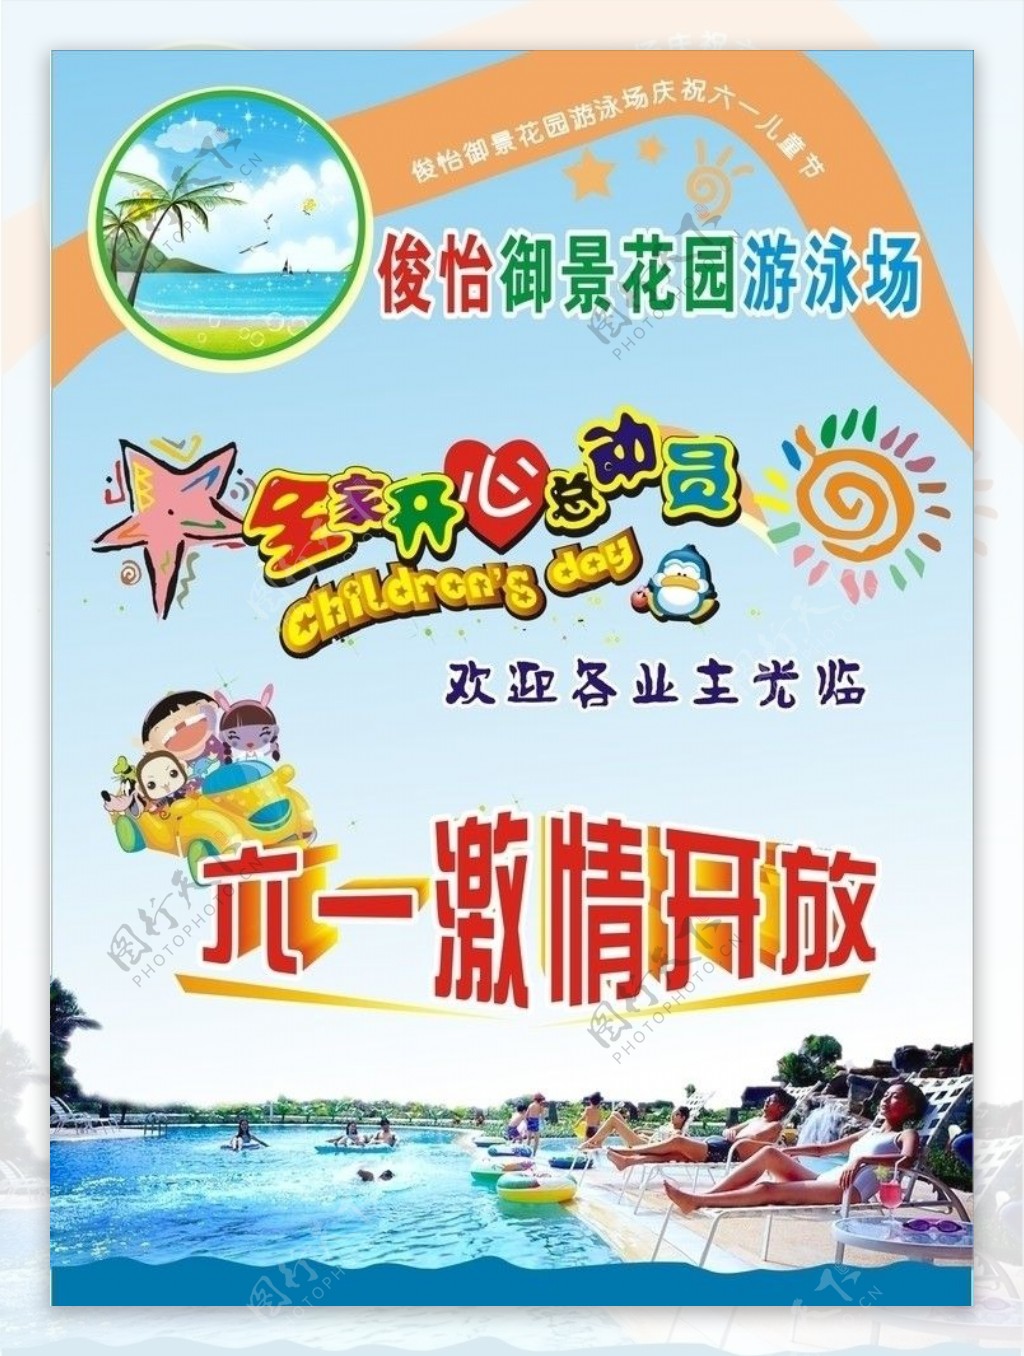 游泳池海报设计模版图片